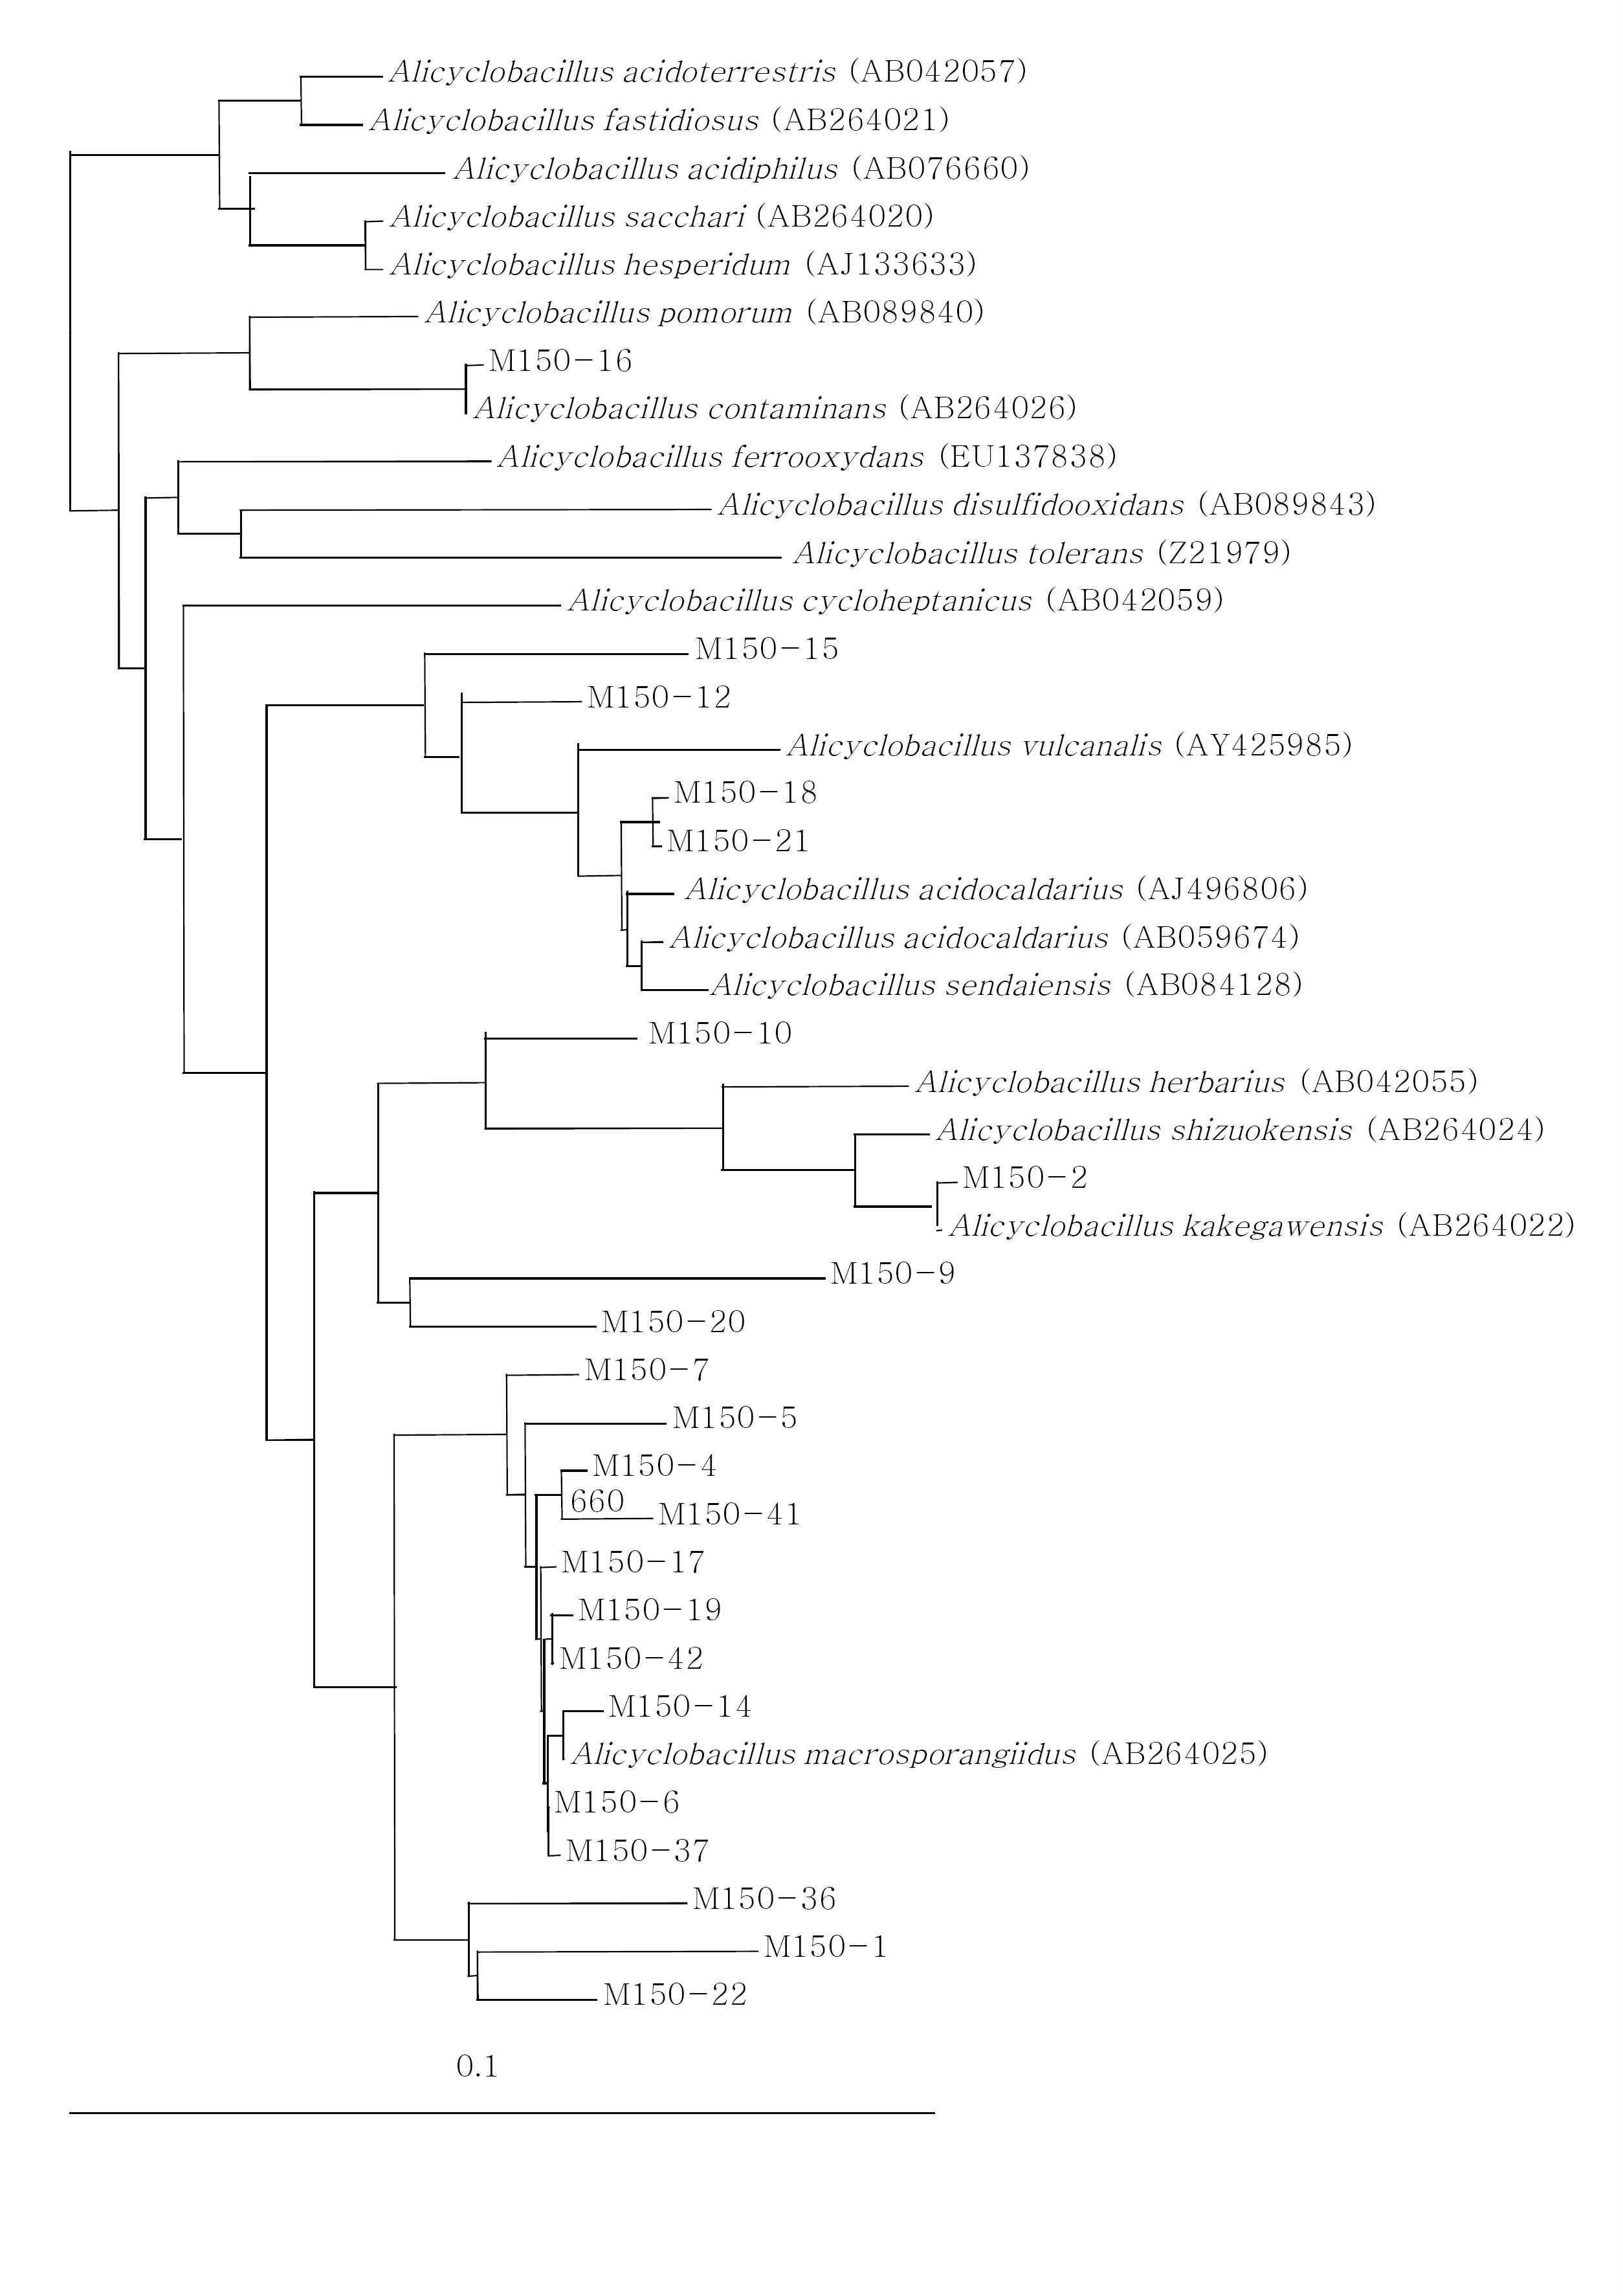 참나무 톱밥 발효 시료에 서식하는 Alicyclobacillus속의 phylogenetic tree M150-: 2010년도 발효 톱밥 1.5 m 시료의 클론, outgroup: Bacillus subtilis (AB042061). 염기서열간의 진화적 거리와 계통도를 계산하기 위해 Jukes & Cantor 거리 계산법과 neighbor-joining 방법을 사용하였다.